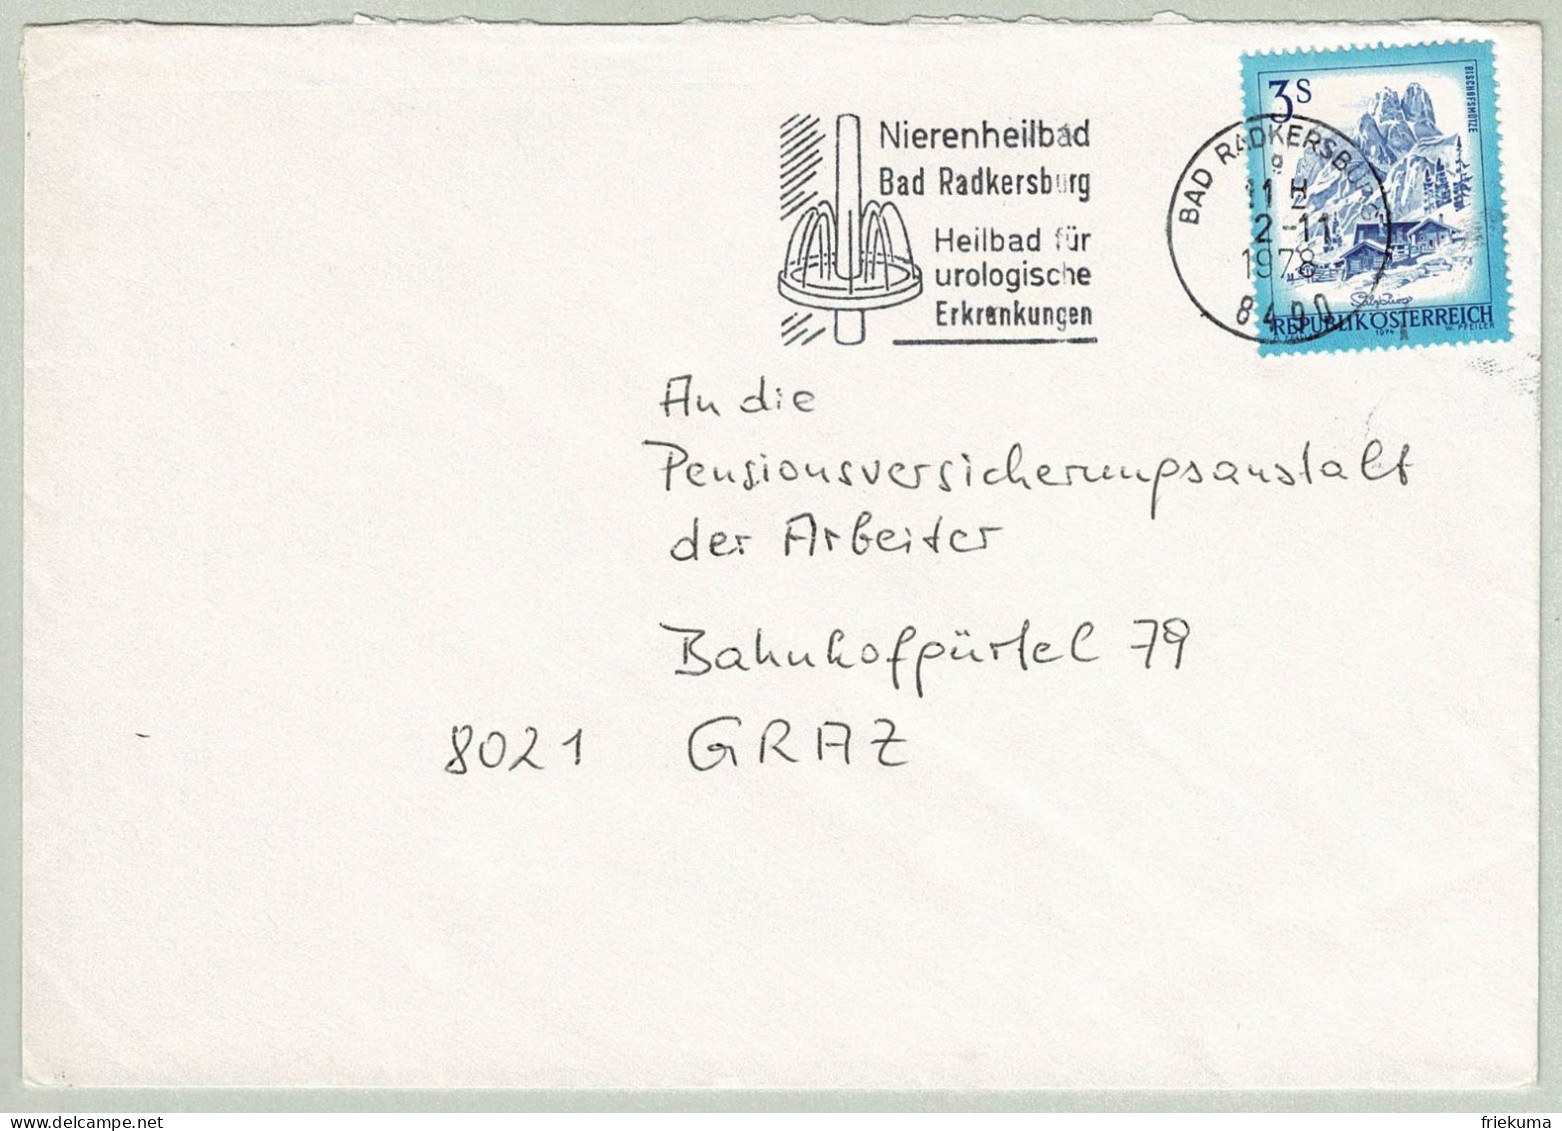 Oesterreich / Austria 1978, Brief Bad Radkersburg - Graz, Nierenheilbad, Urologische Erkrankungen - Thermalisme